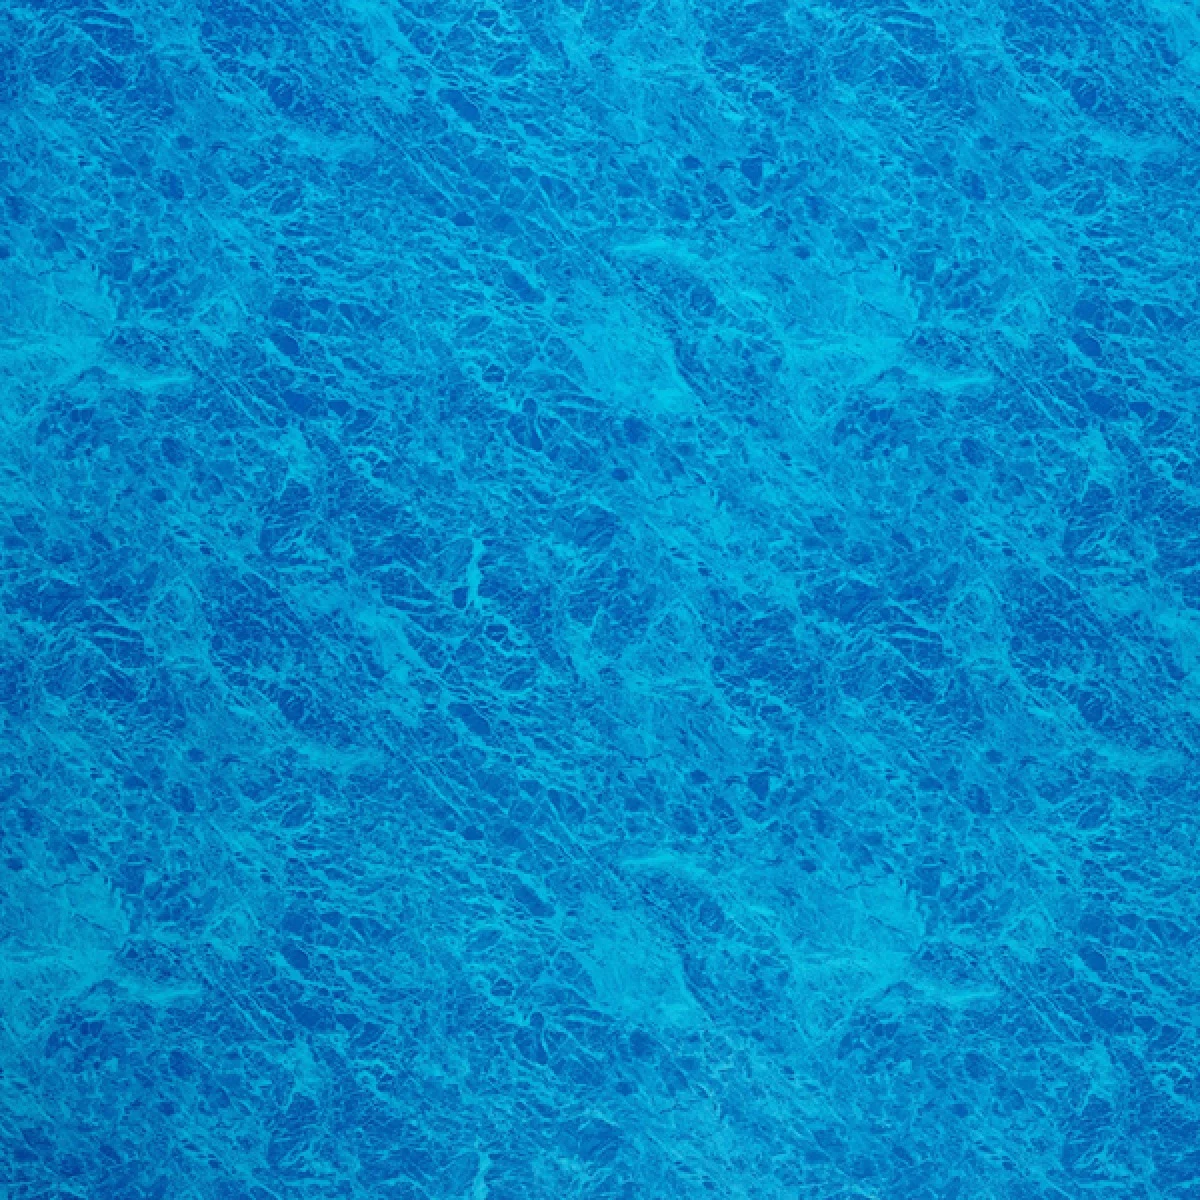 Pool Liner Round 4500mm x 1370mm Dark Blue